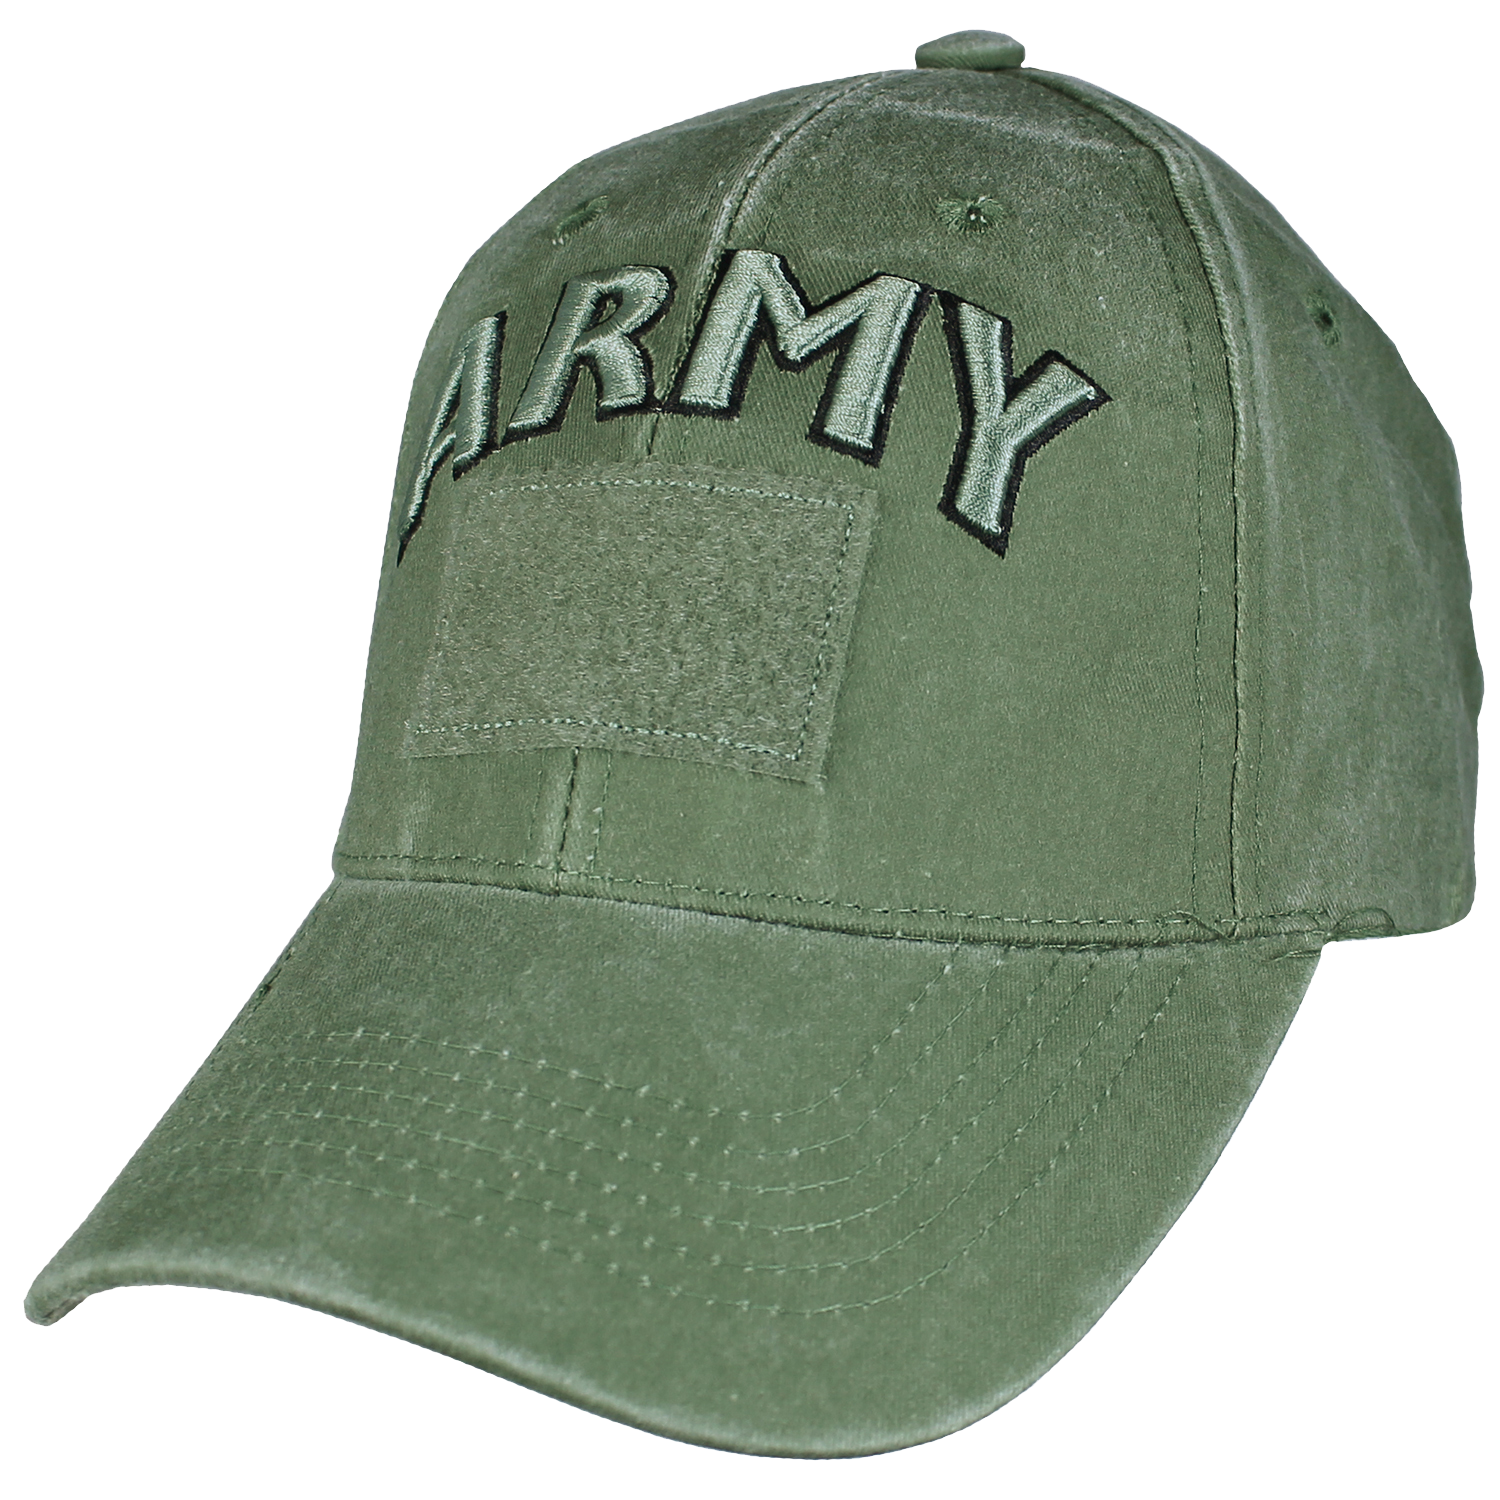 CAP- ARMY (OD GRN / H / L )Discontinued